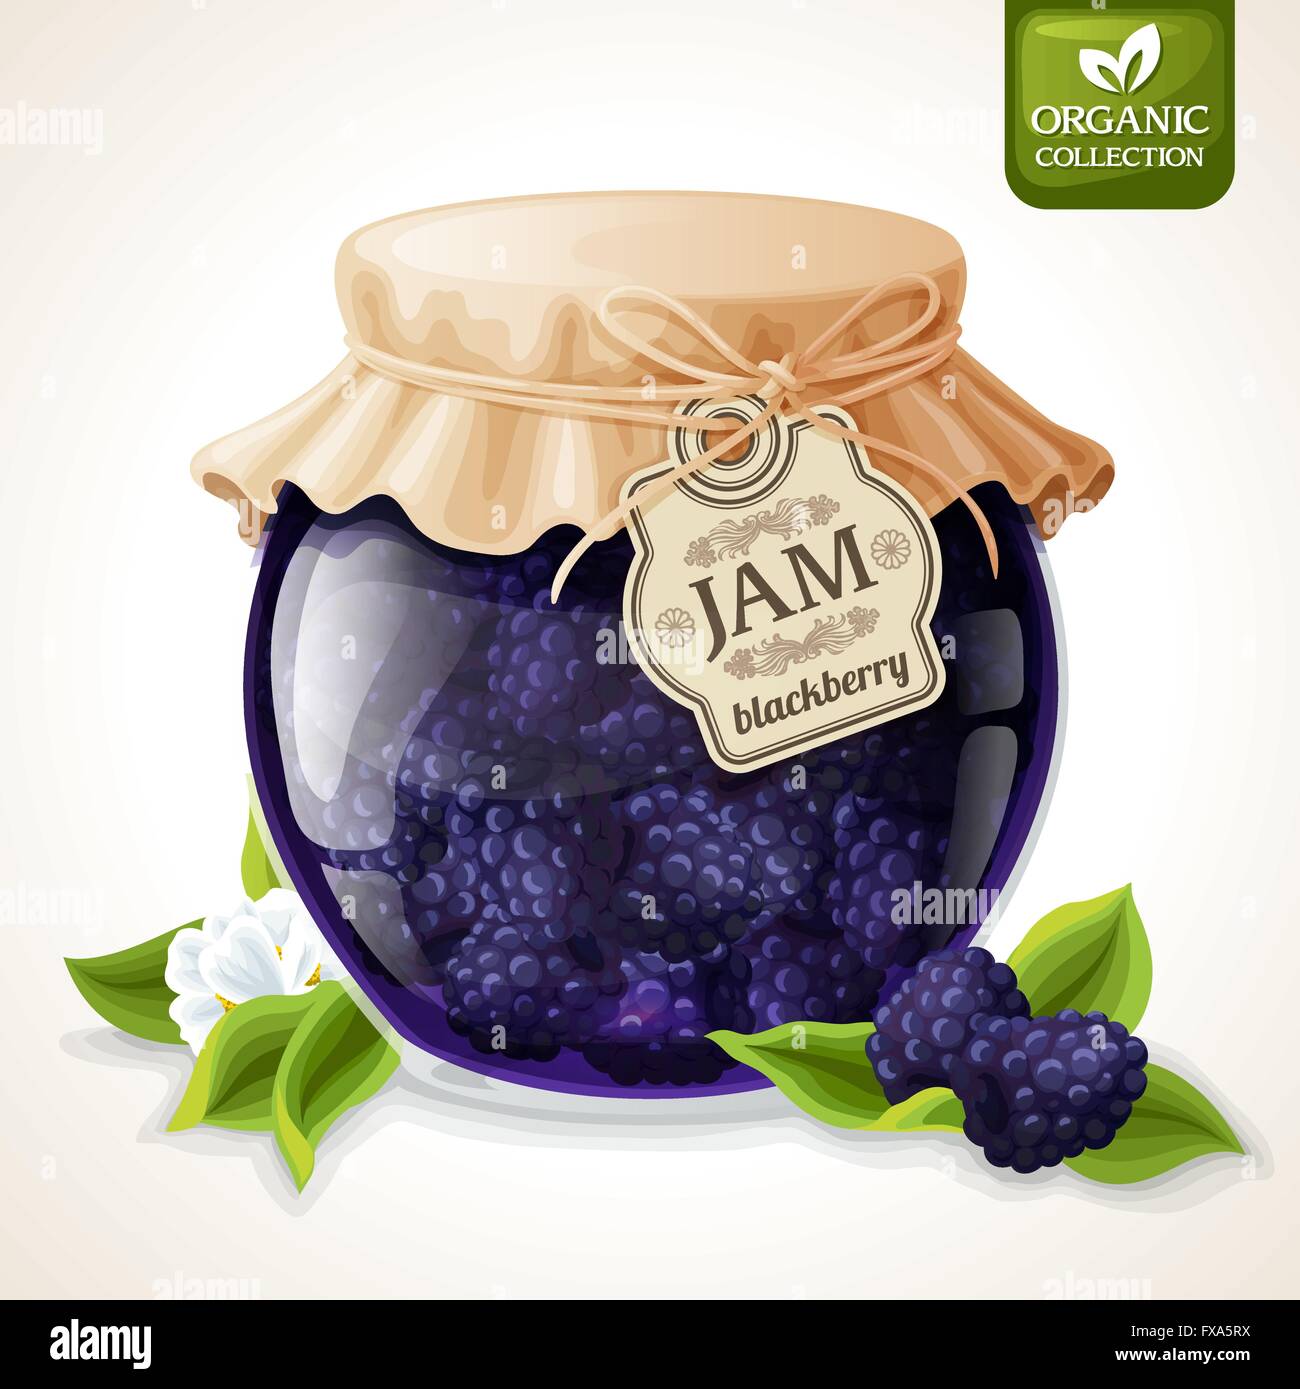 Blackberry jam glass Stock Vector